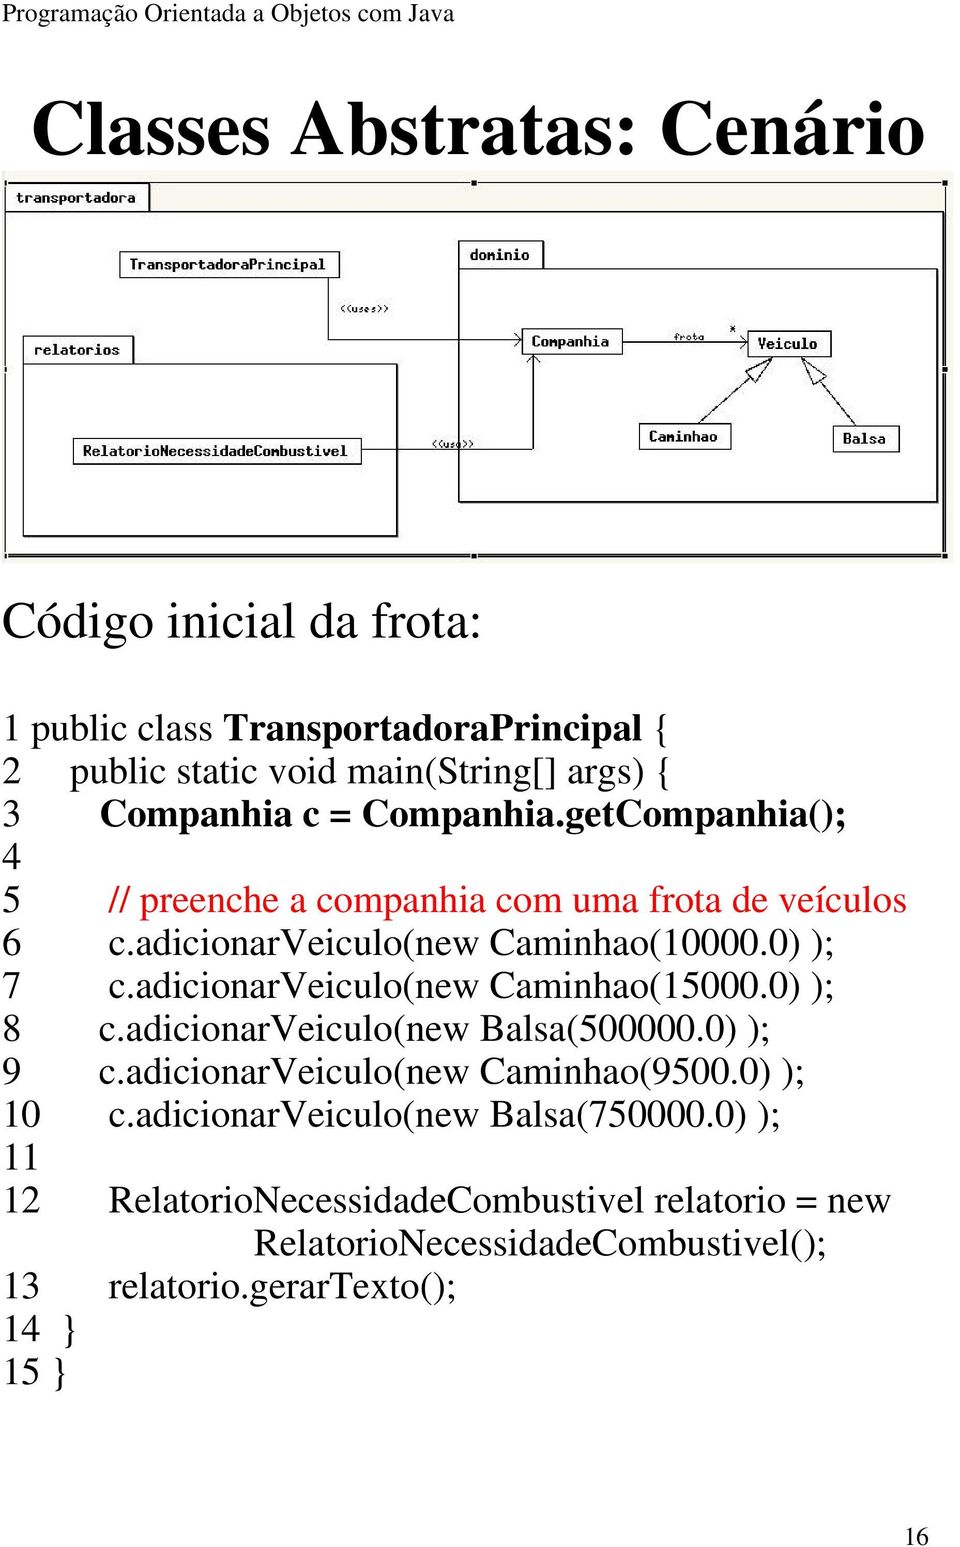 adicionarveiculo(new Caminhao(15000.0) ); 8 c.adicionarveiculo(new Balsa(500000.0) ); 9 c.adicionarveiculo(new Caminhao(9500.0) ); 10 c.